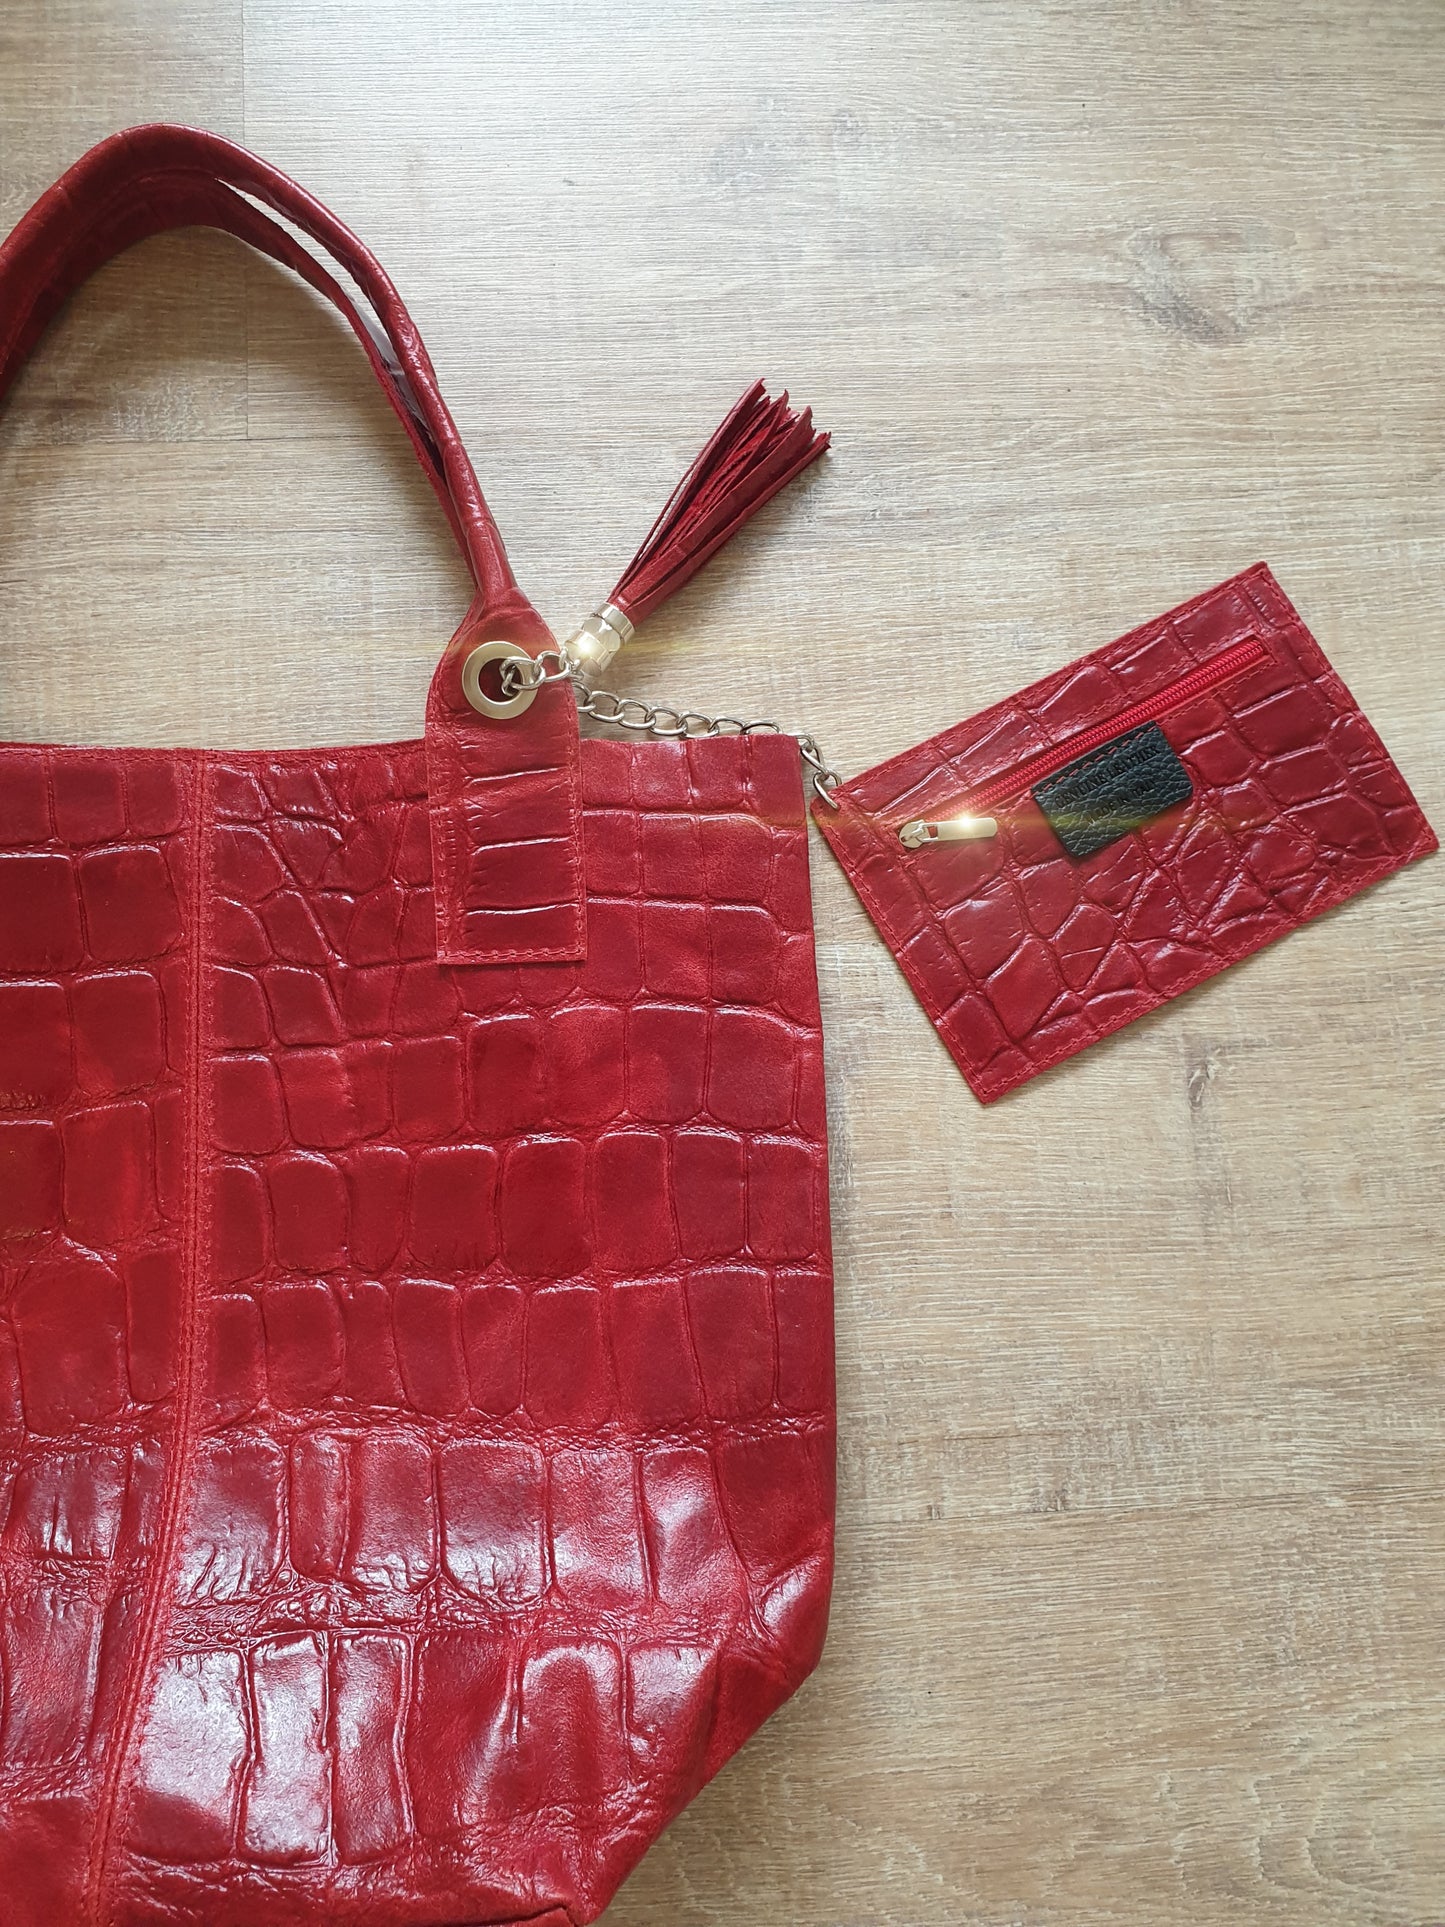 Tasche Shopper in Rot aus Leder mit Krokopraegung gross mit Innenbeutel an Kette